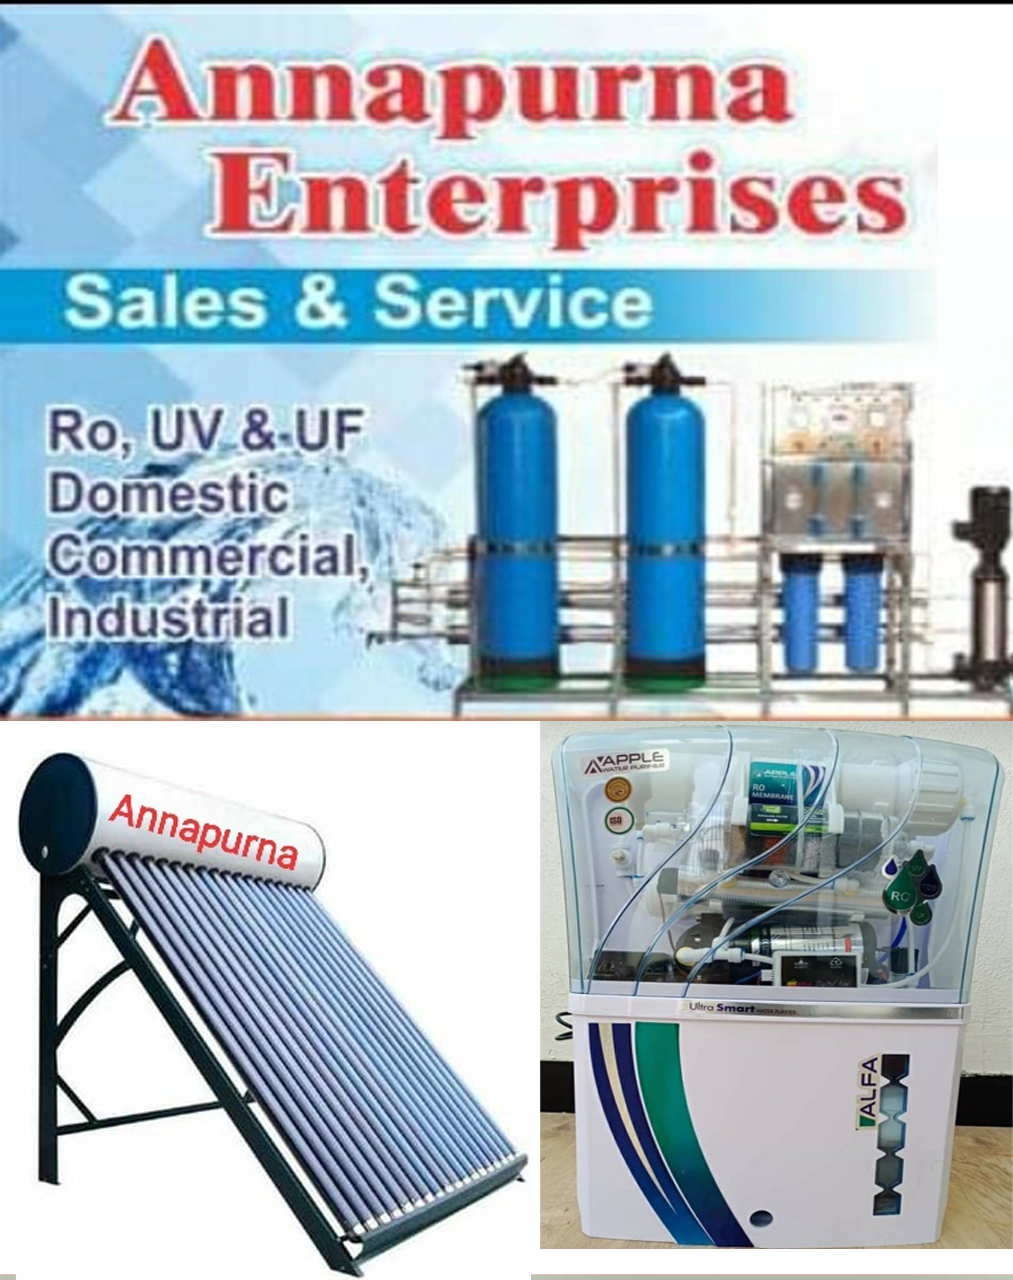 Annapurna Enterprises| SolapurMall.com